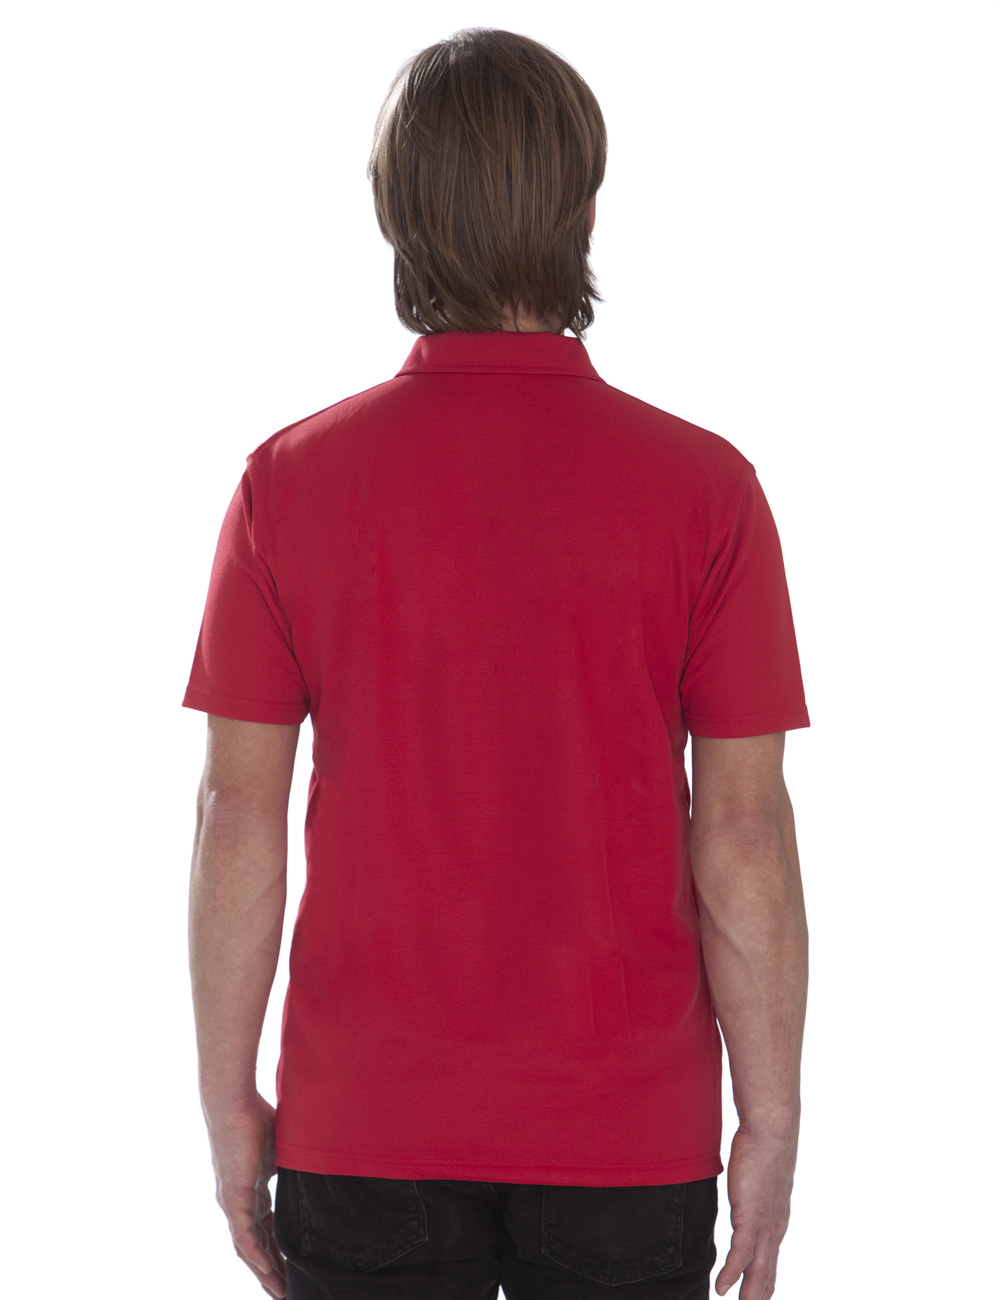 UV PRO Zip Up Shirt für Herren rot back